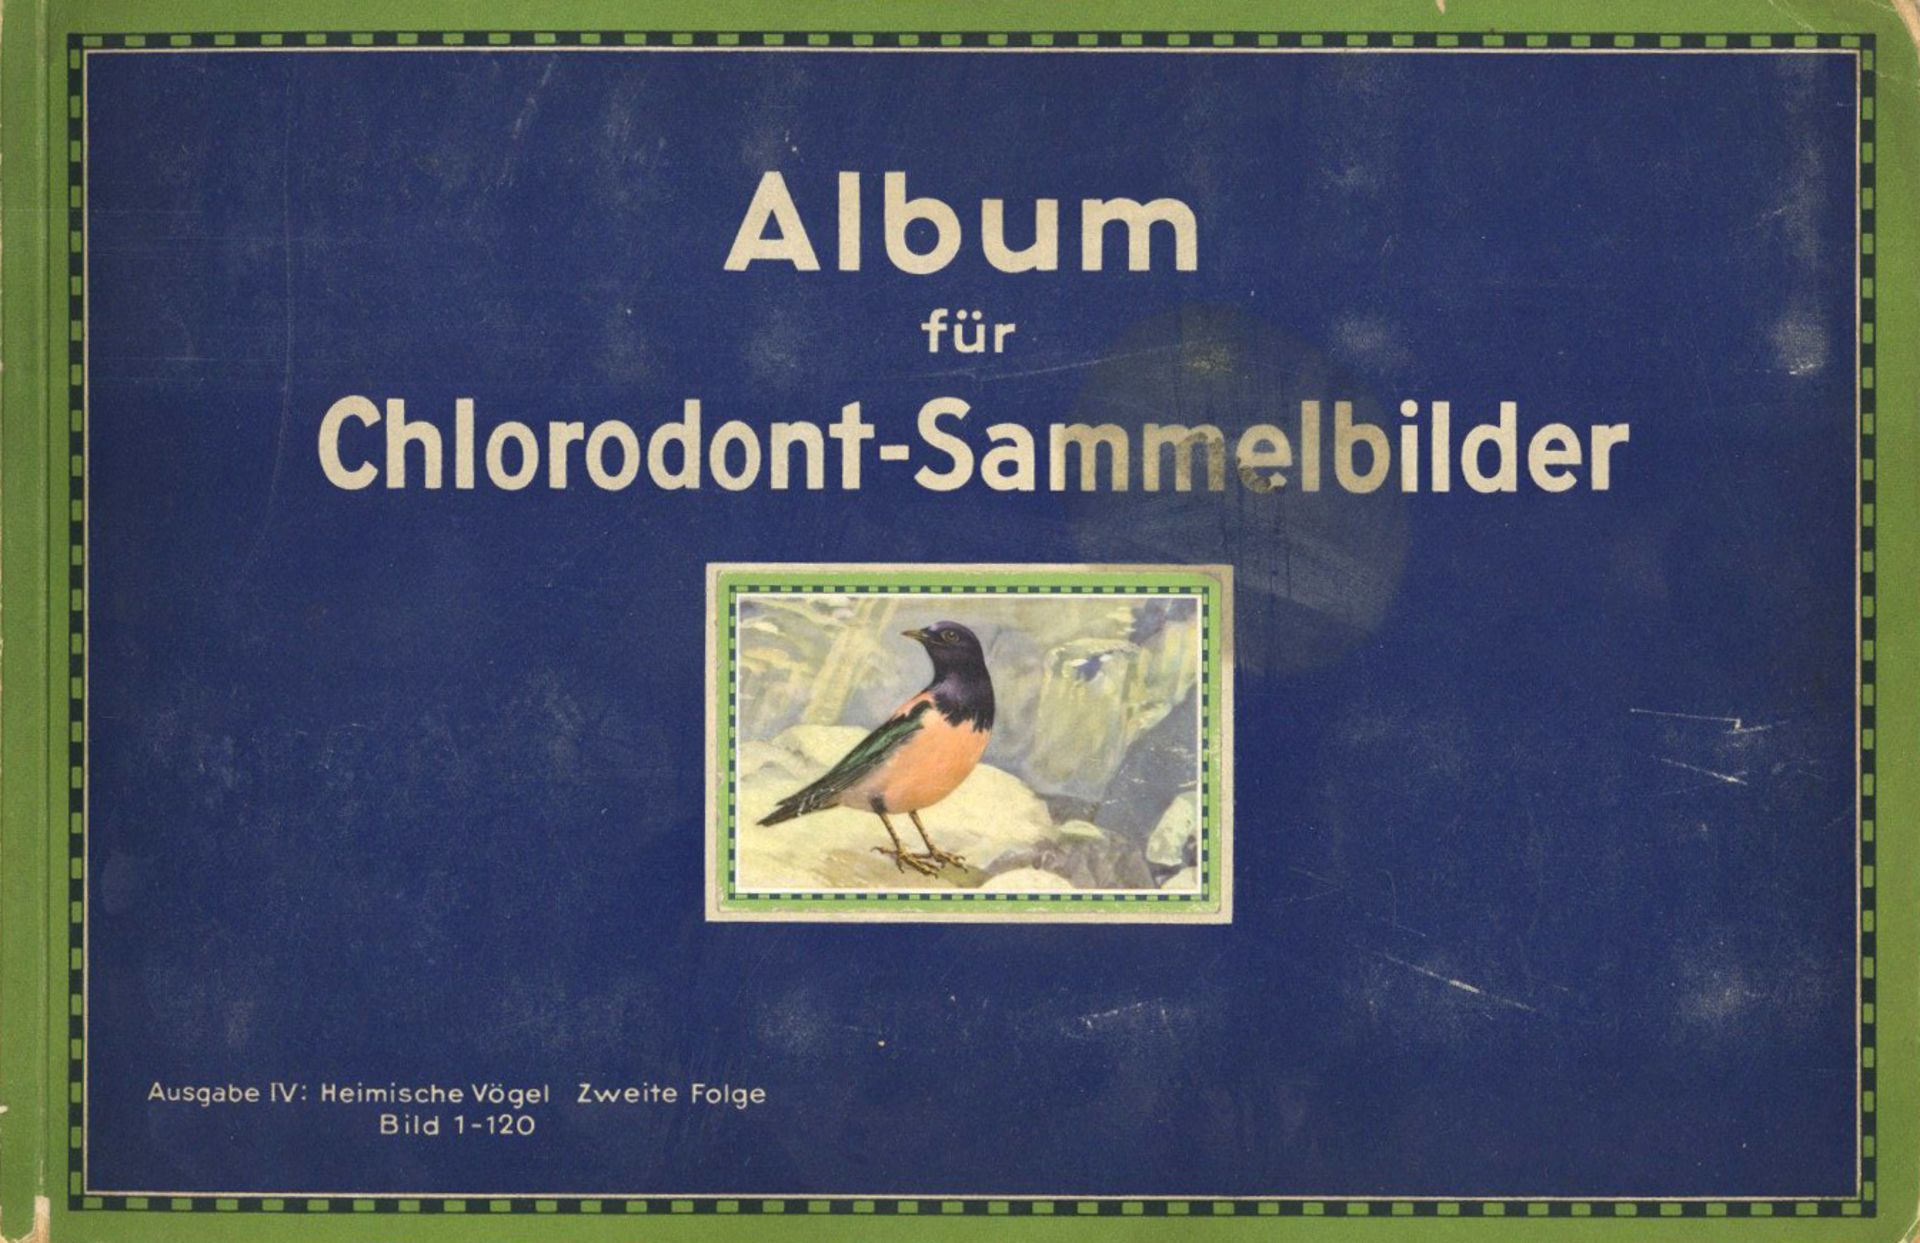 Sammelbild-Album Chlorodont Sammelbilder Heimische Vögel Zweite Folge hrsg. Leo-Werke o. Jahr kompl.